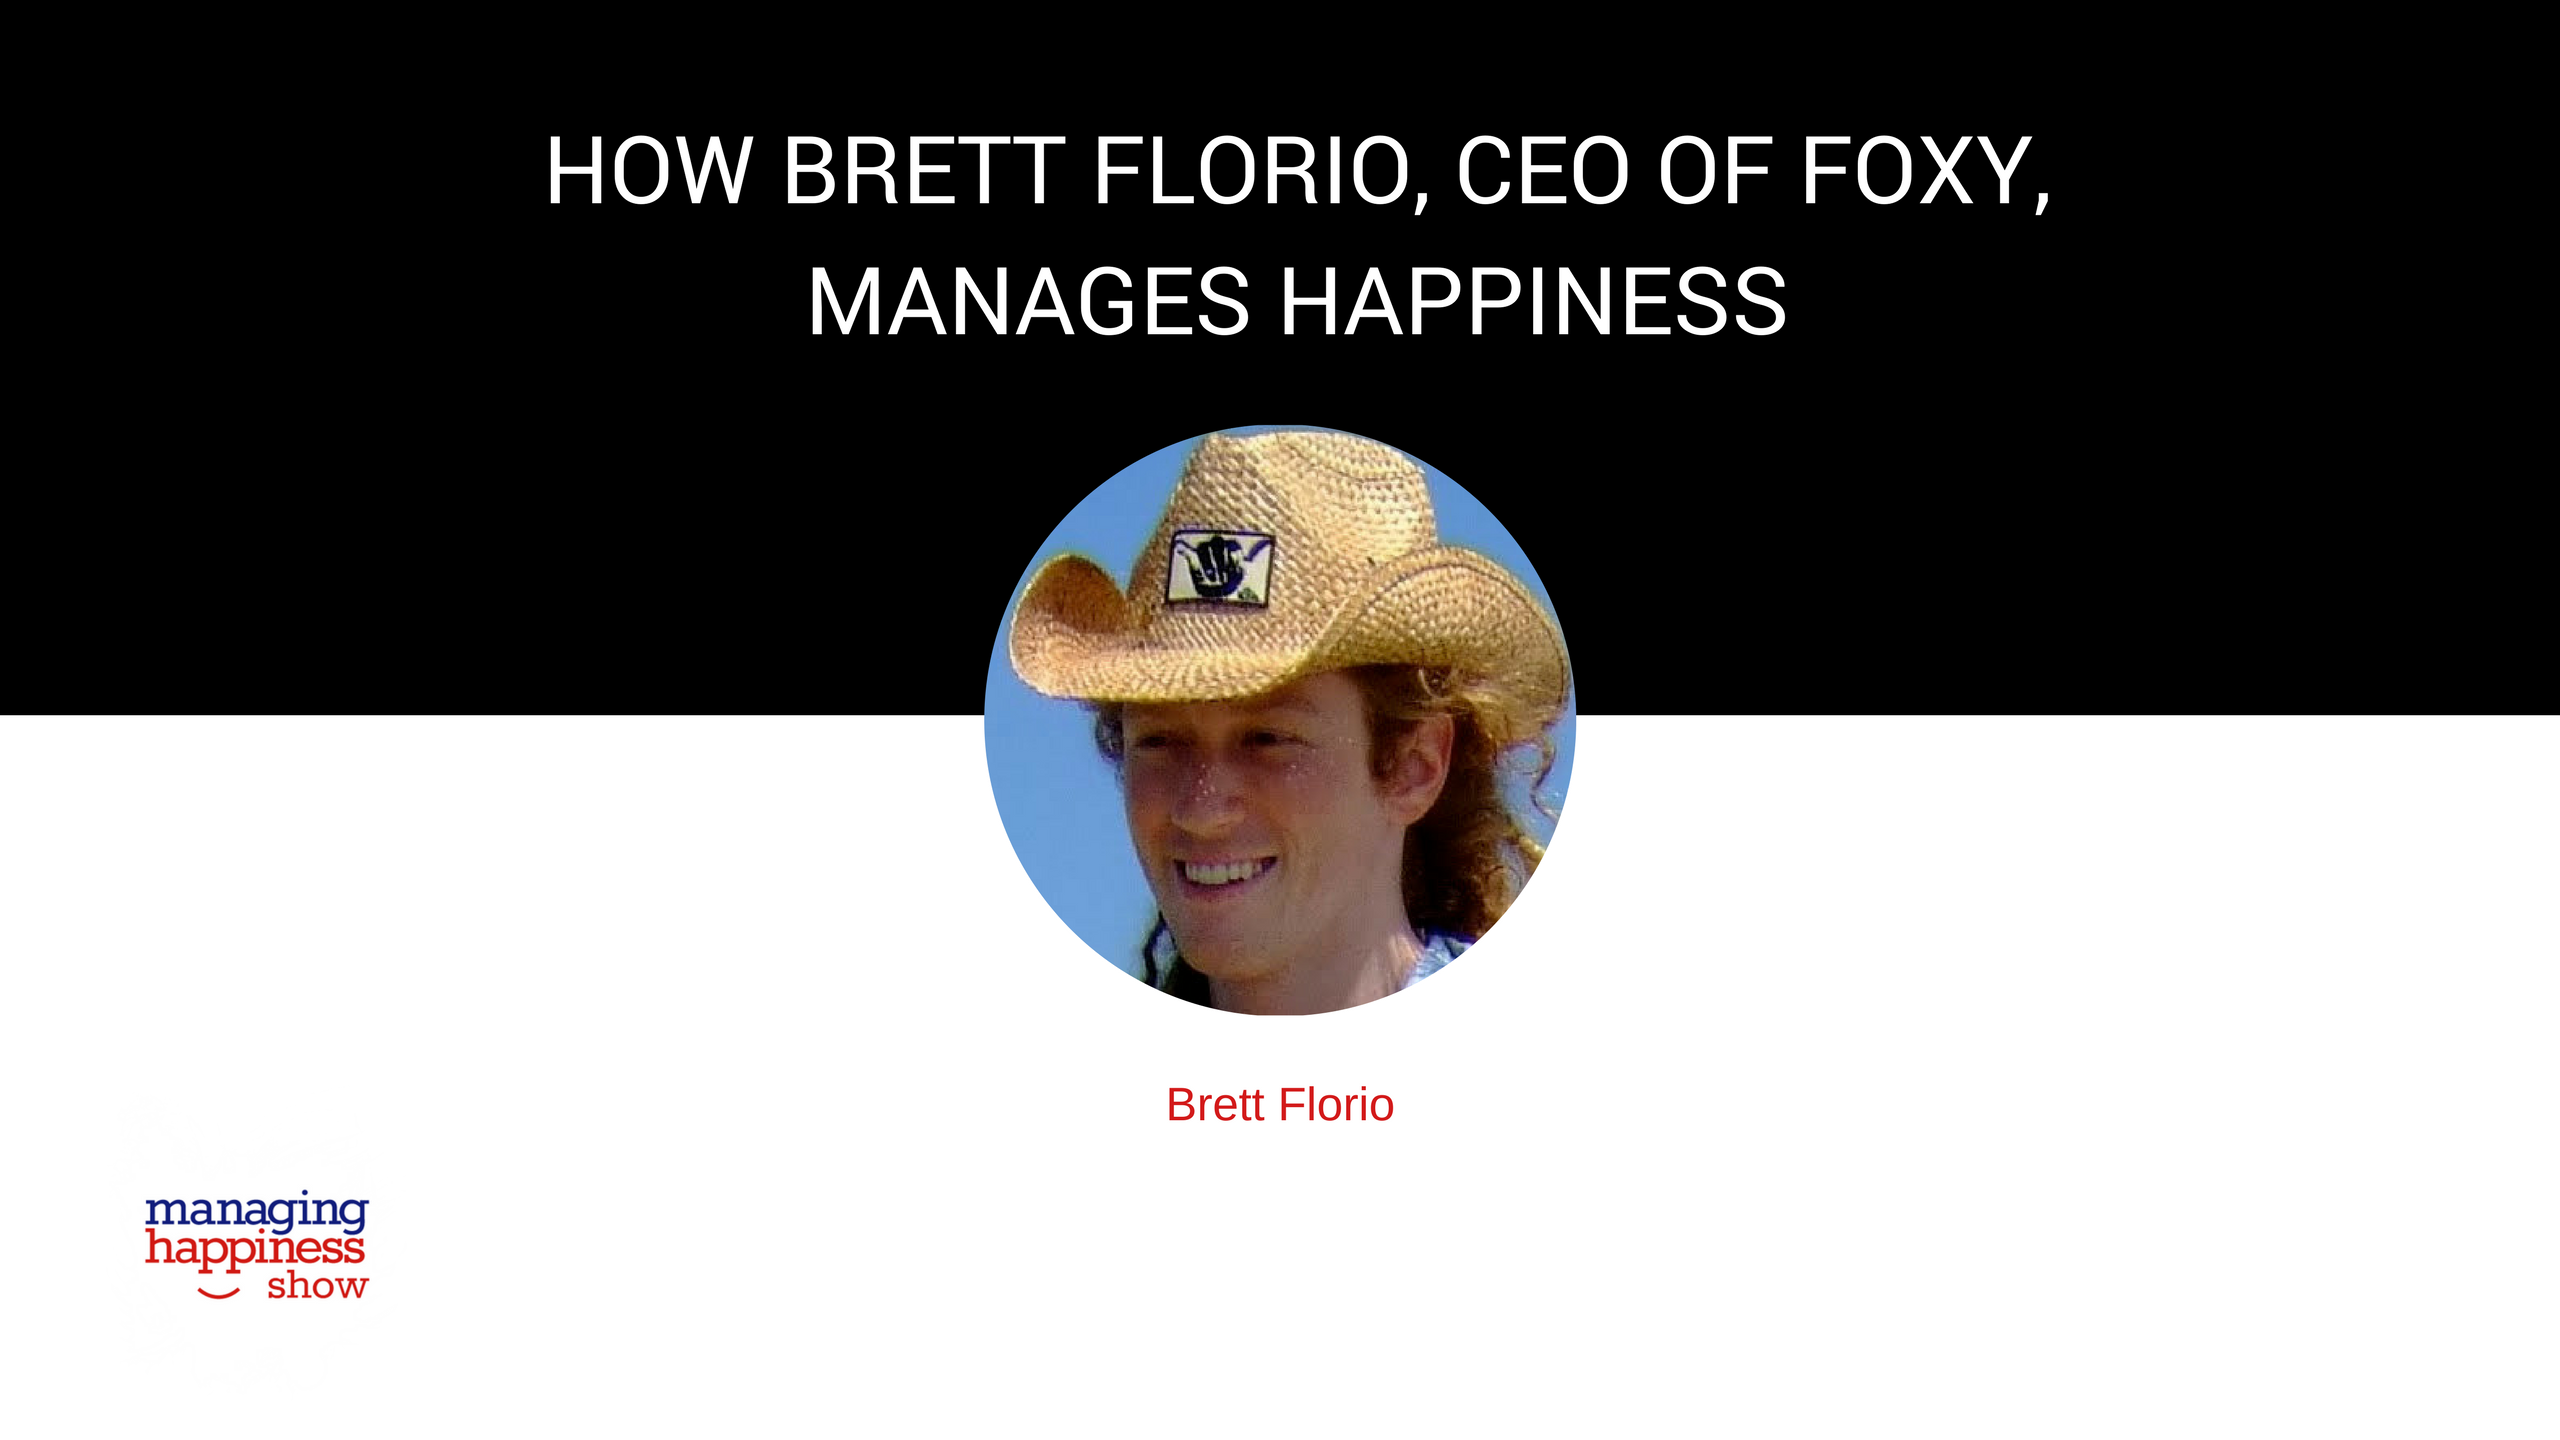 Brett Florio, CEO of Foxy